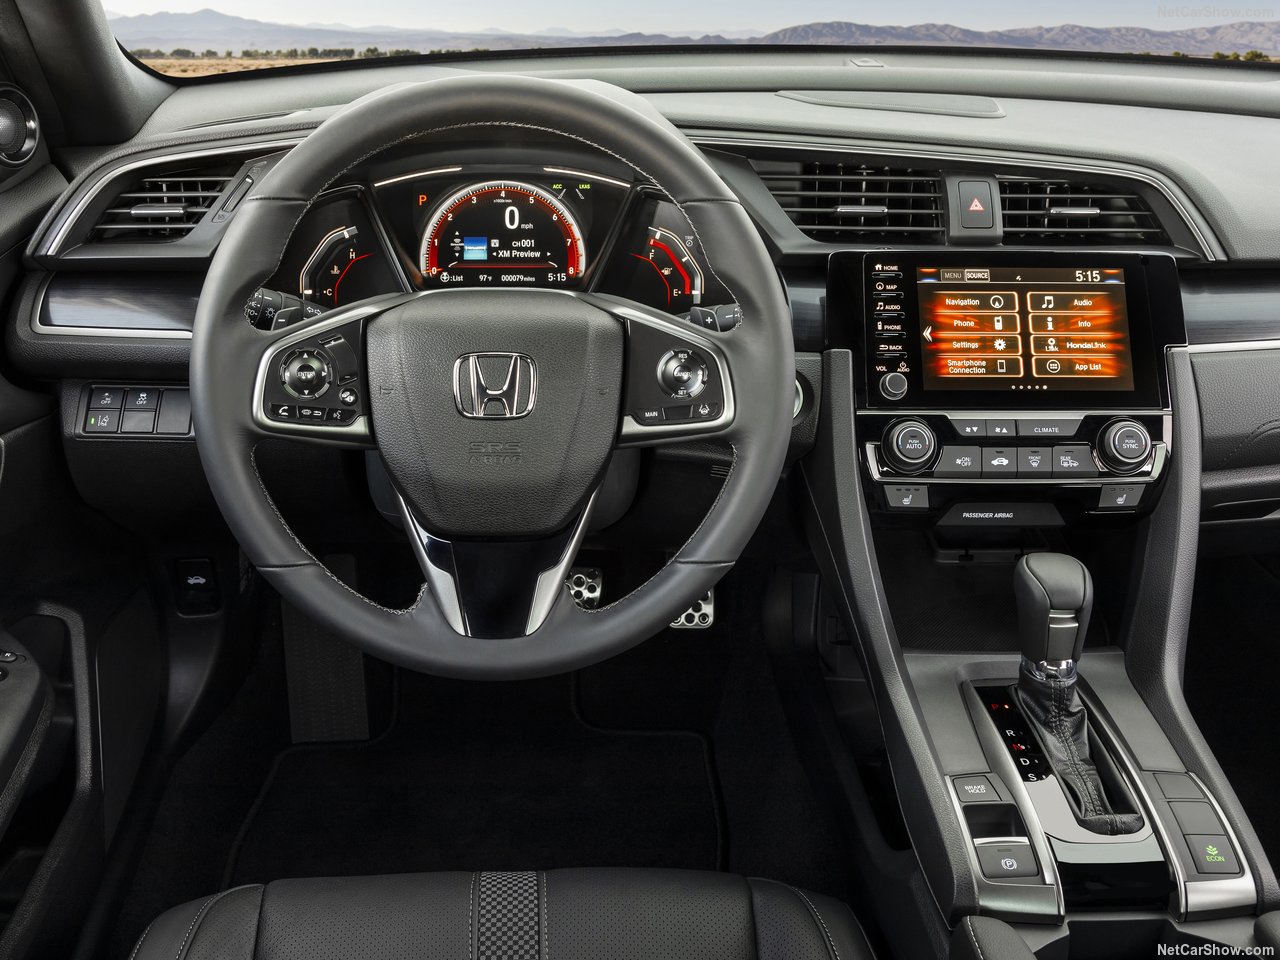 2020 Honda Civic Hatchback yenilendi! Yeni Honda Civic’in fiyatı ne kadar? Honda Civic’in motor ve donanım özellikleri...